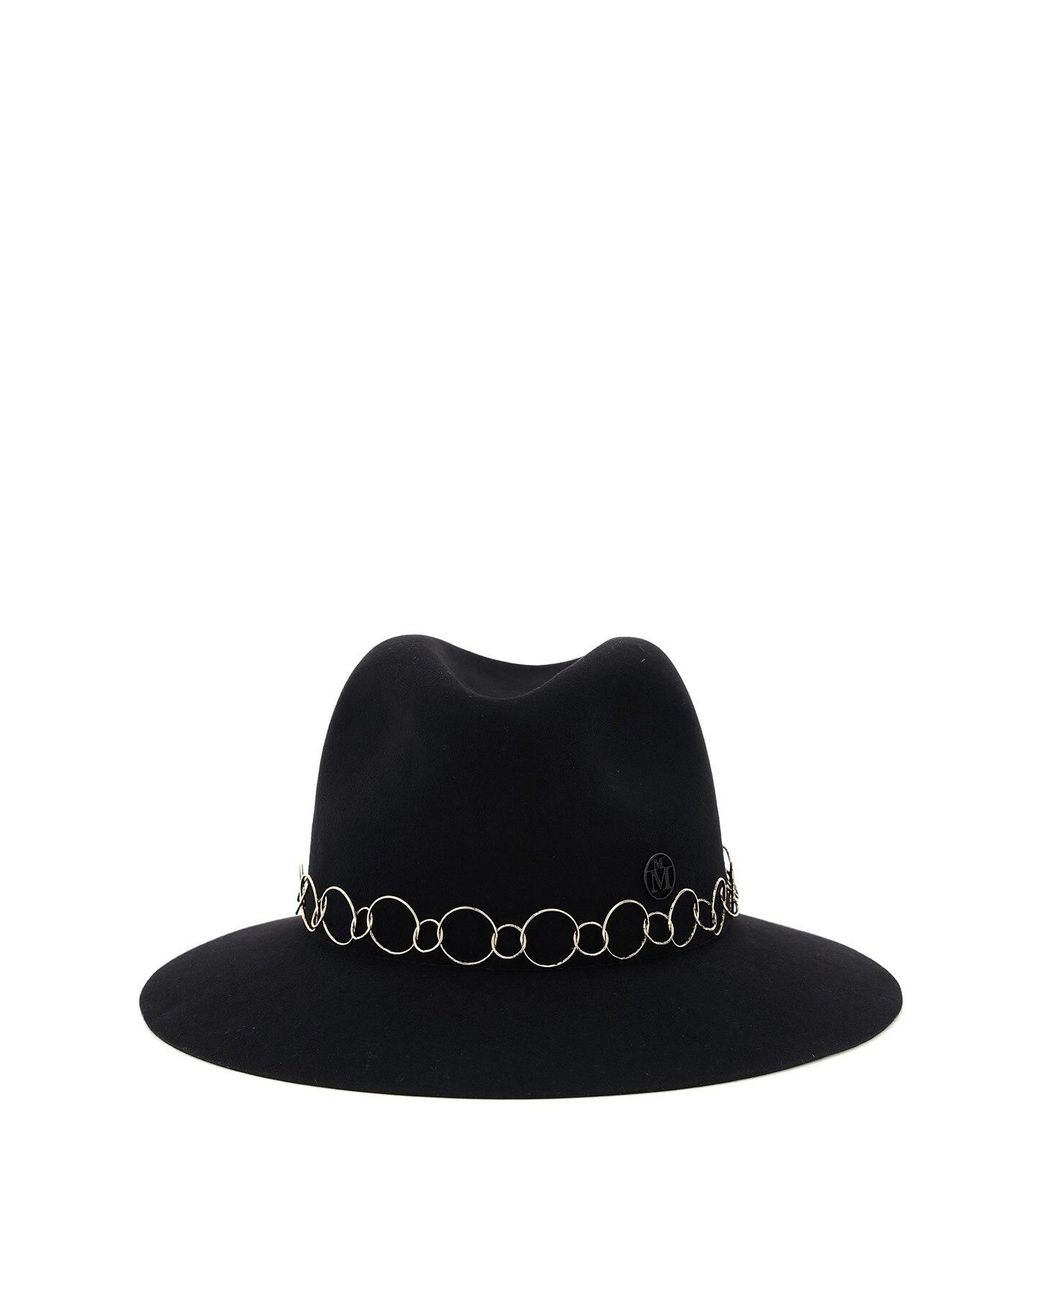 Maison Michel Henrietta Felt Fedora Hat With Chain in Black - Lyst